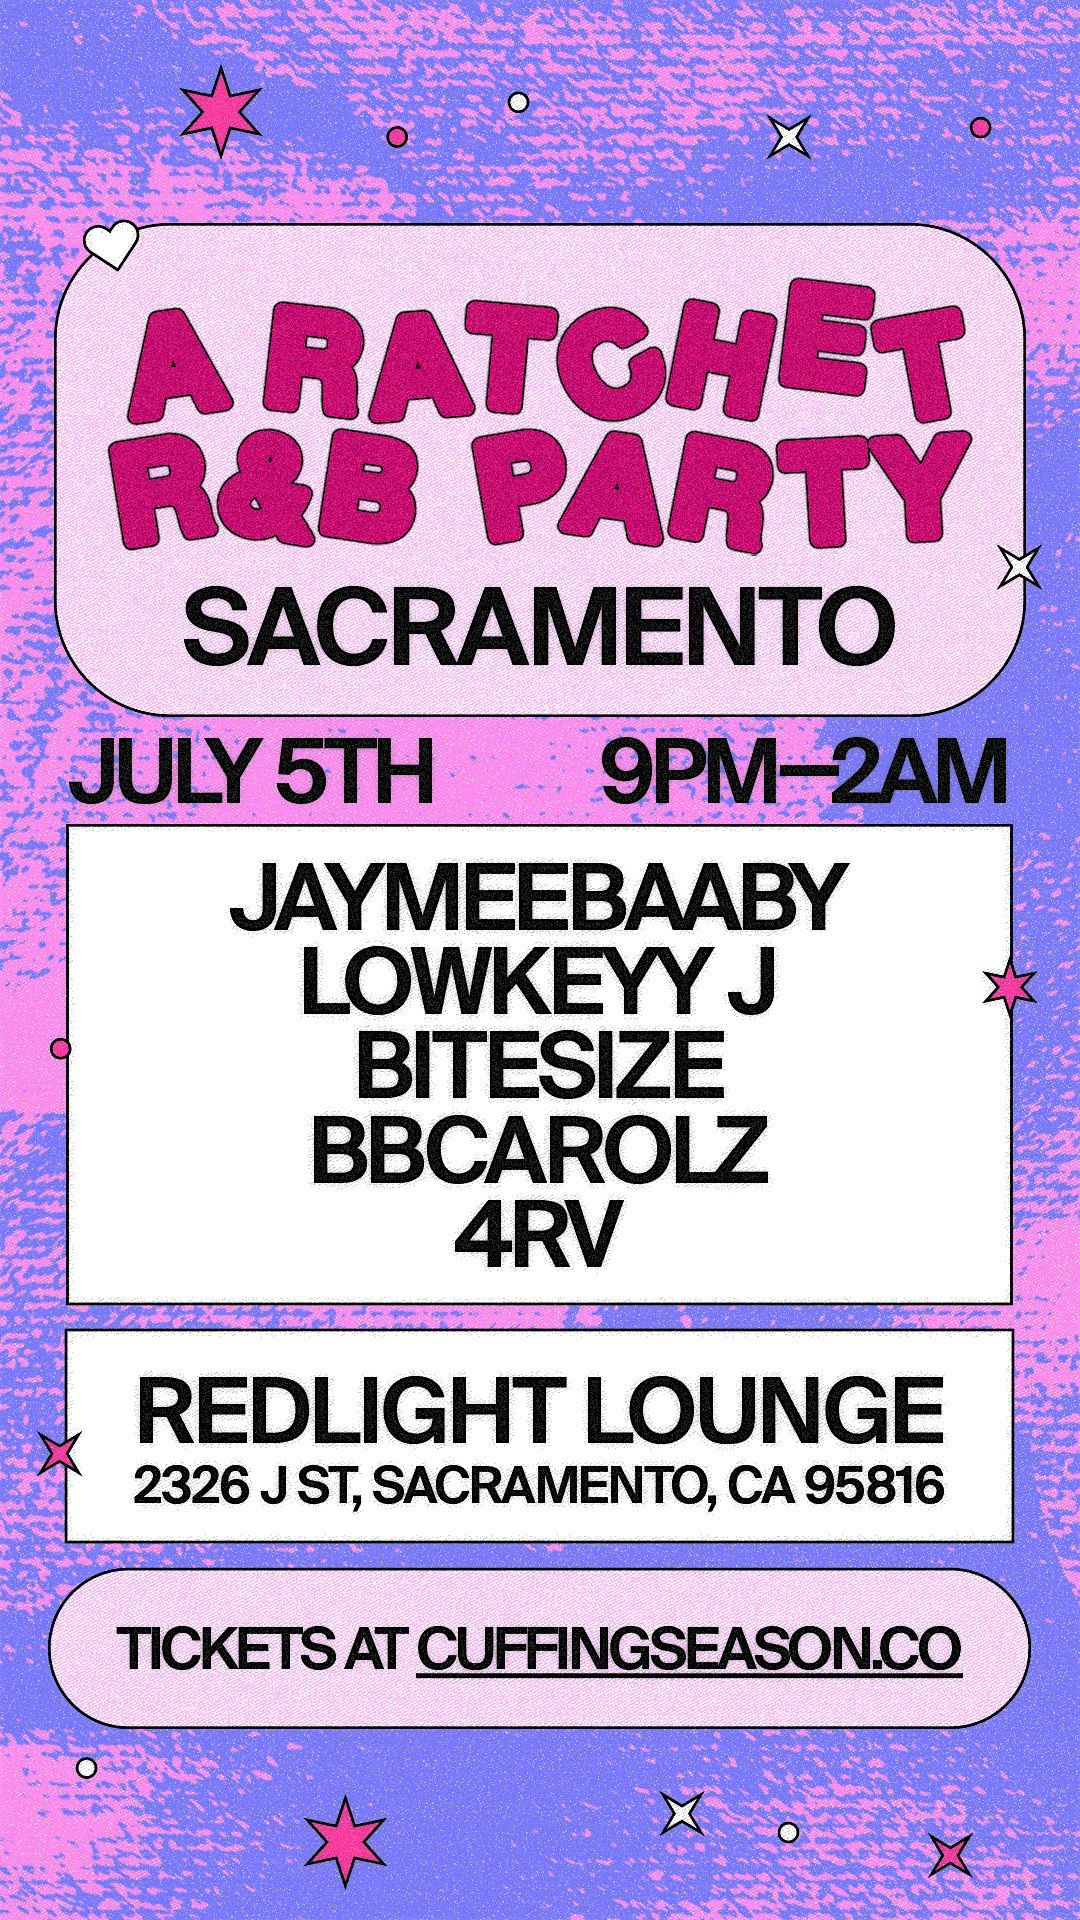 A Ratchet R&B Party Sacramento